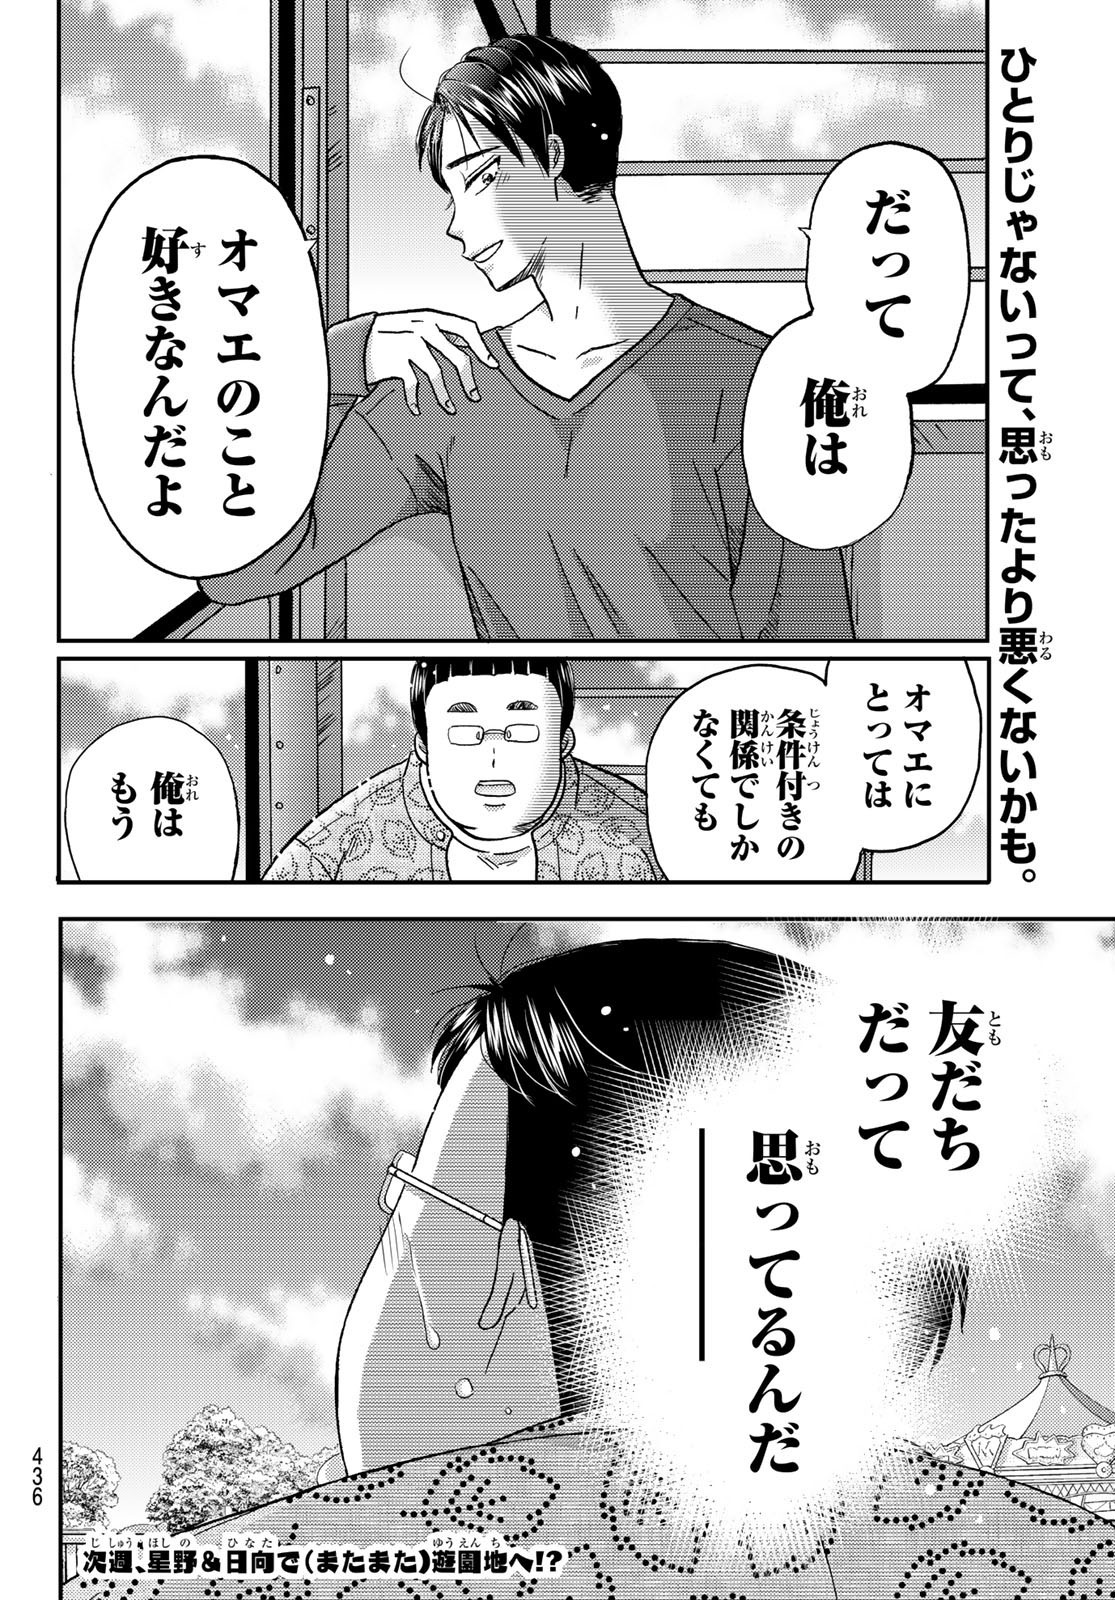 Hinata-san, Hoshino desu. - Chapter 028 - Page 10